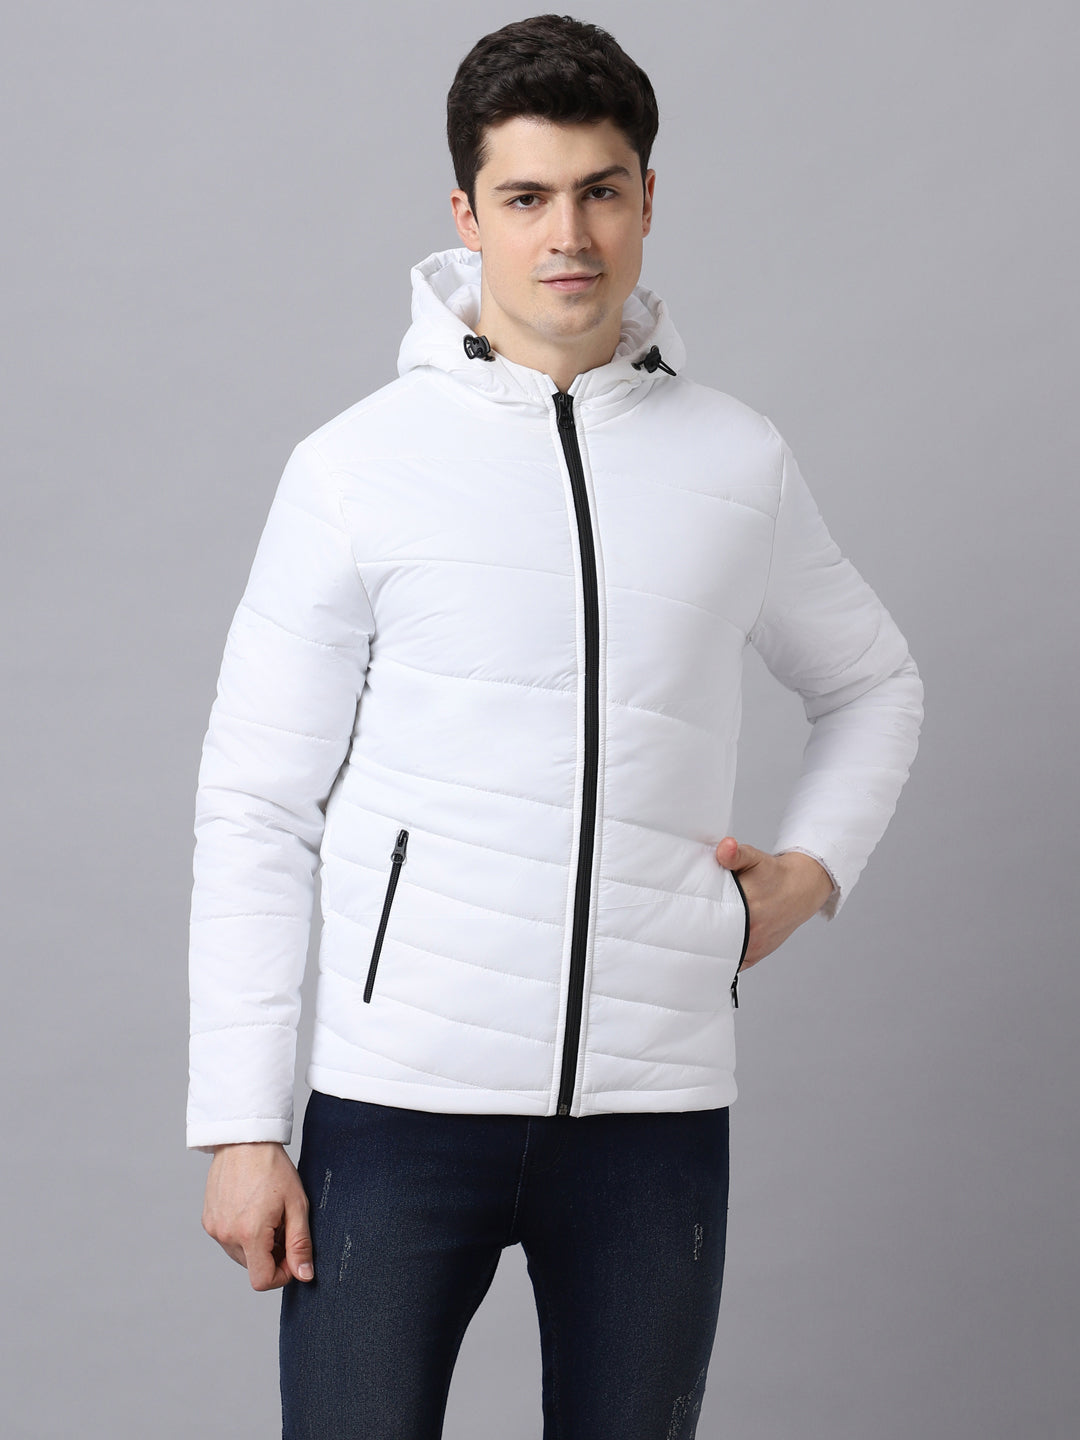 Men's White Full Sleeve Zippered Hooded Neck Puffer Jacket